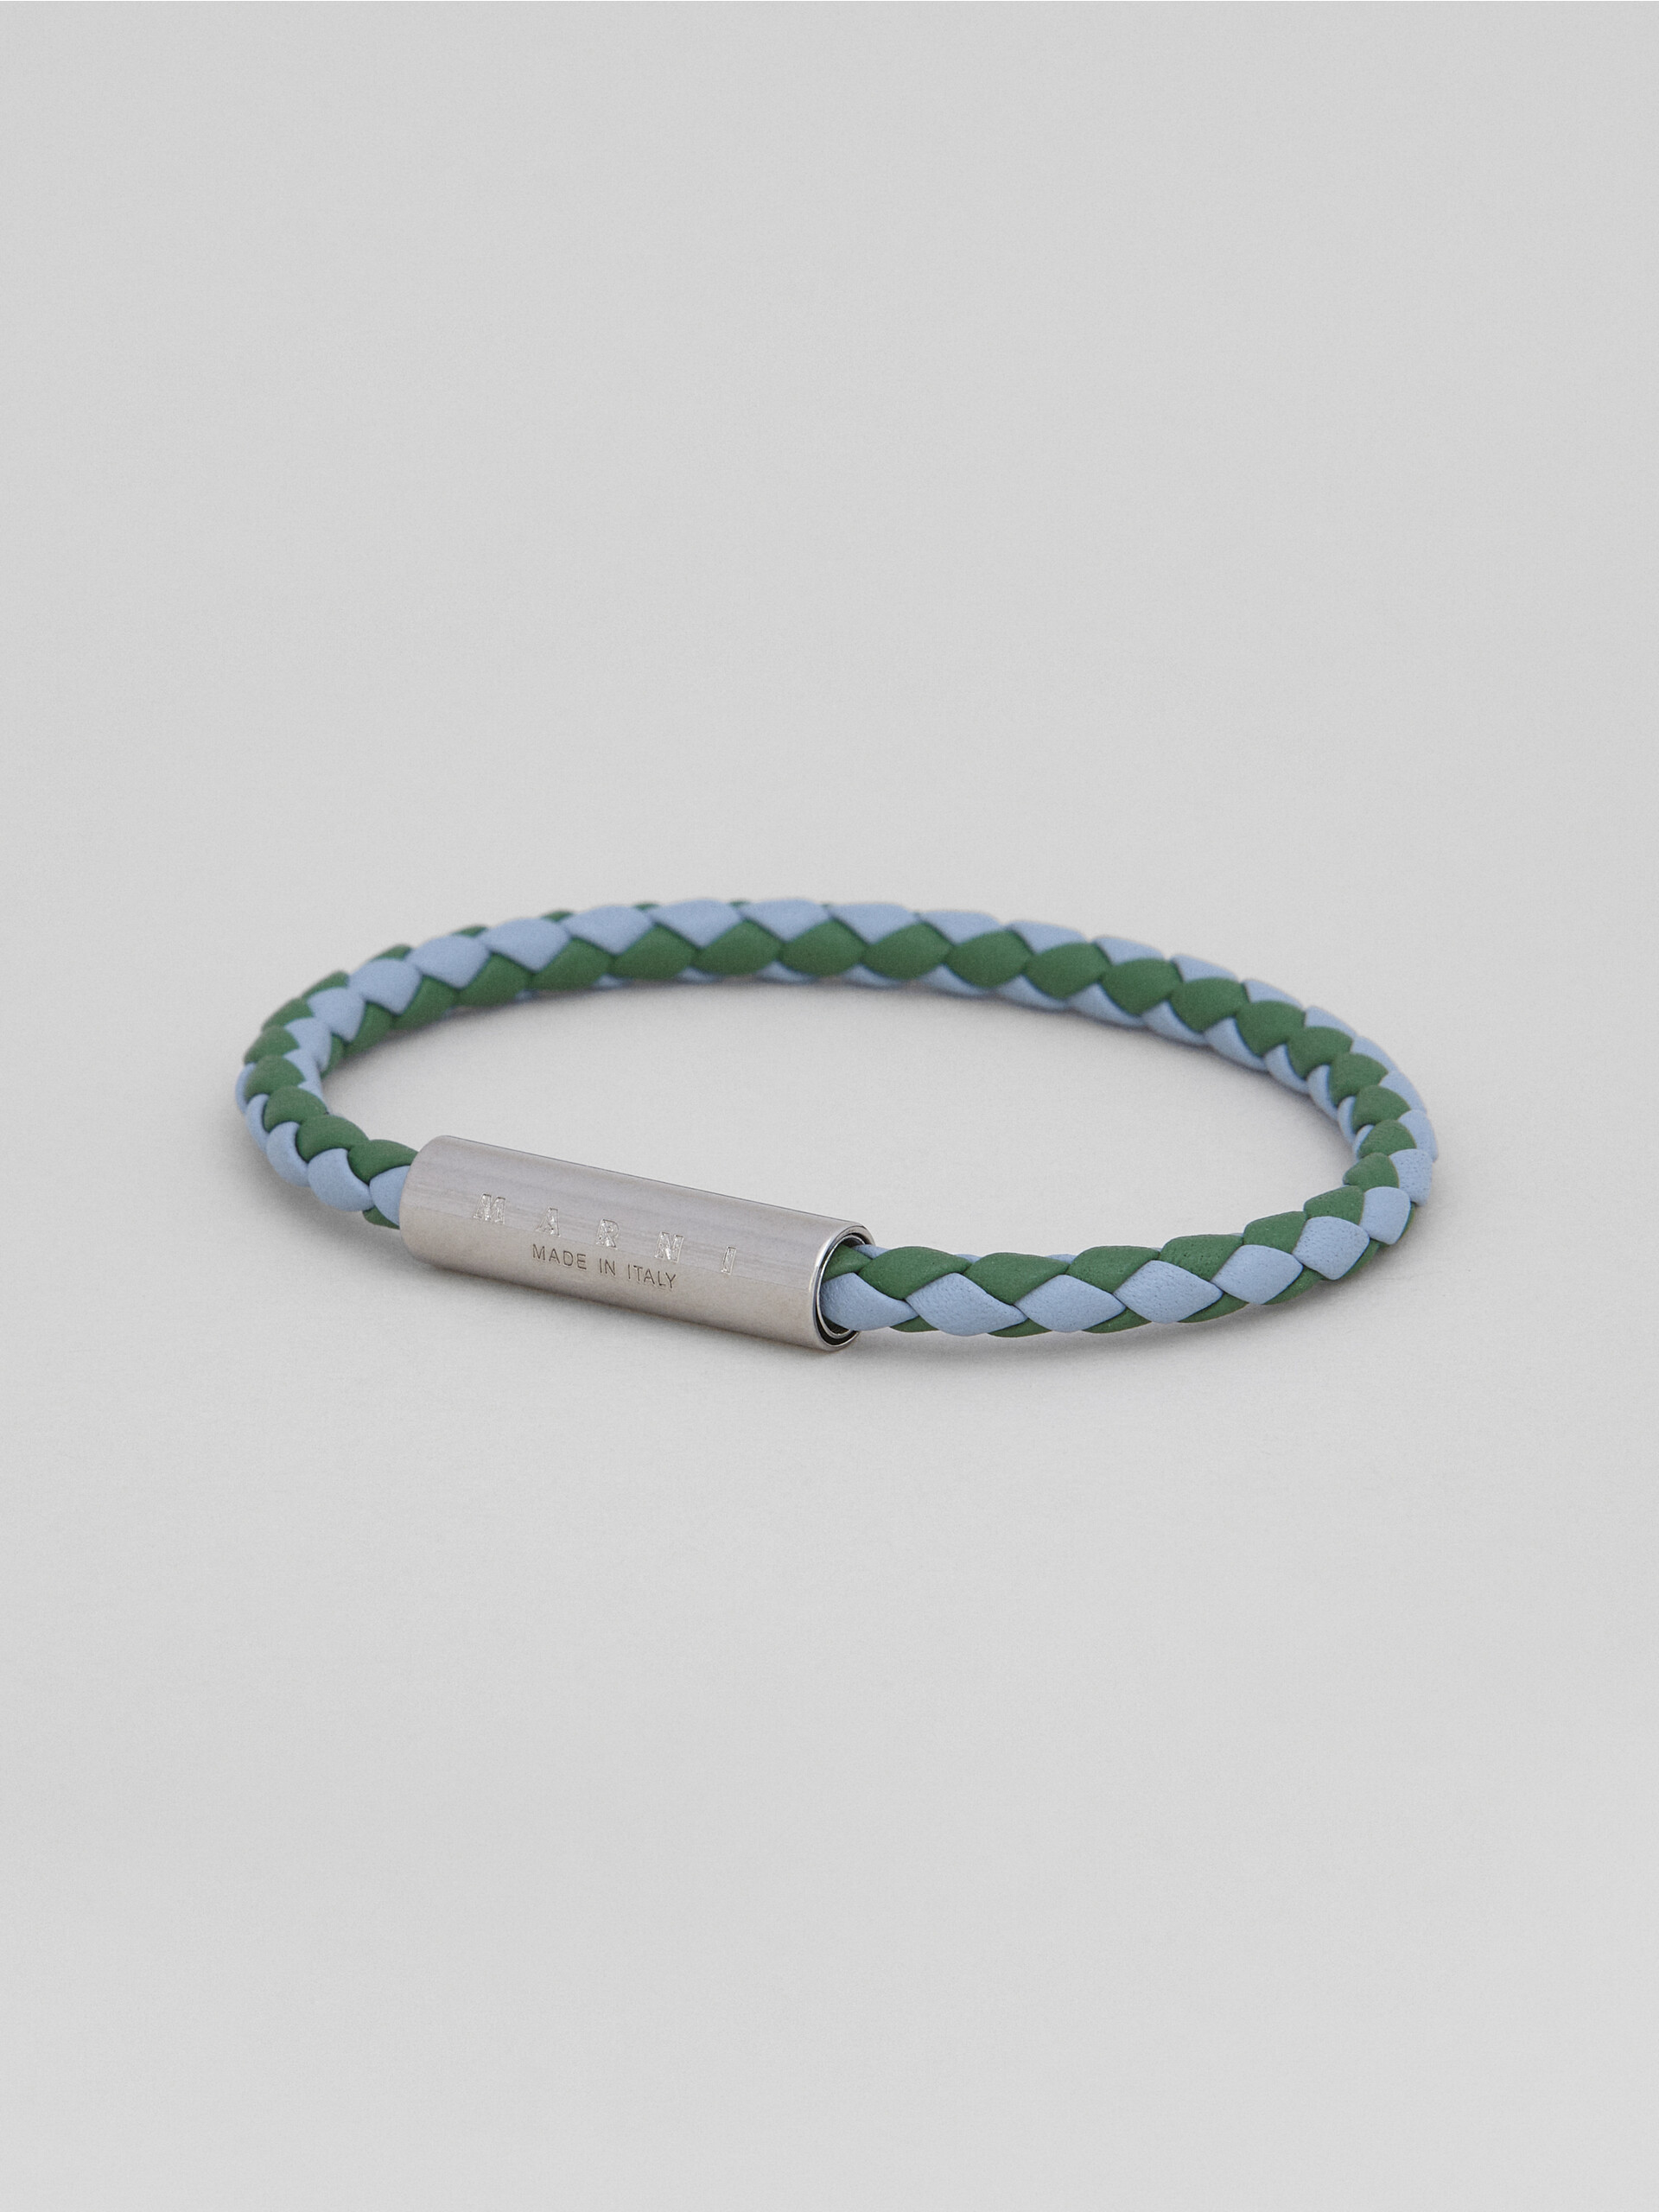 Bracciale in pelle intrecciata verde e azzurro - Braccialetto - Image 4